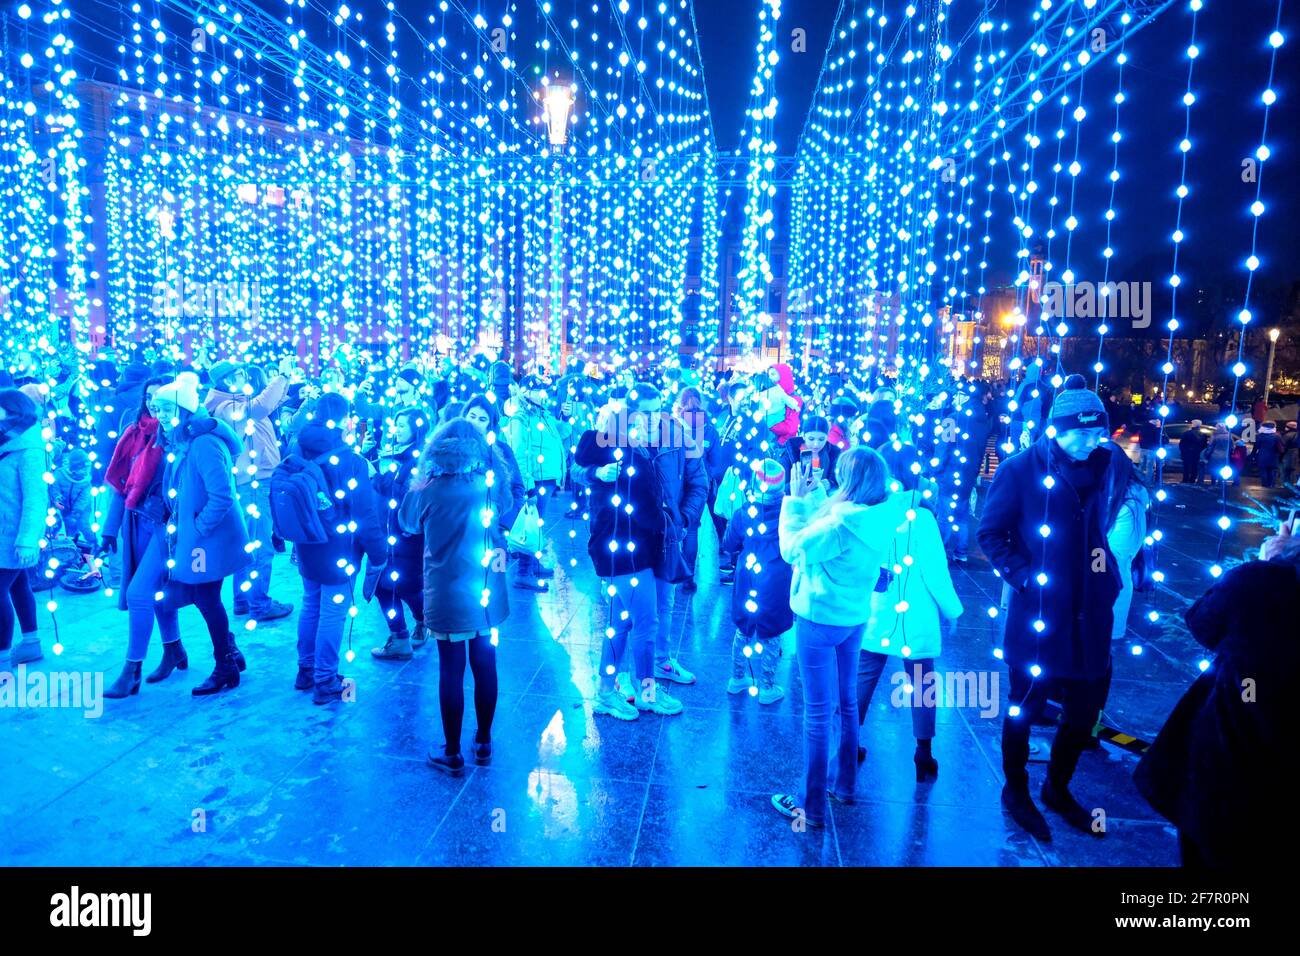 14.12.2019, Bruessel, Belgien - Touristen in einer Lichtinstallation in der Vorweihnachtszeit in Bruessel an der Place de l’Albertine Foto de stock